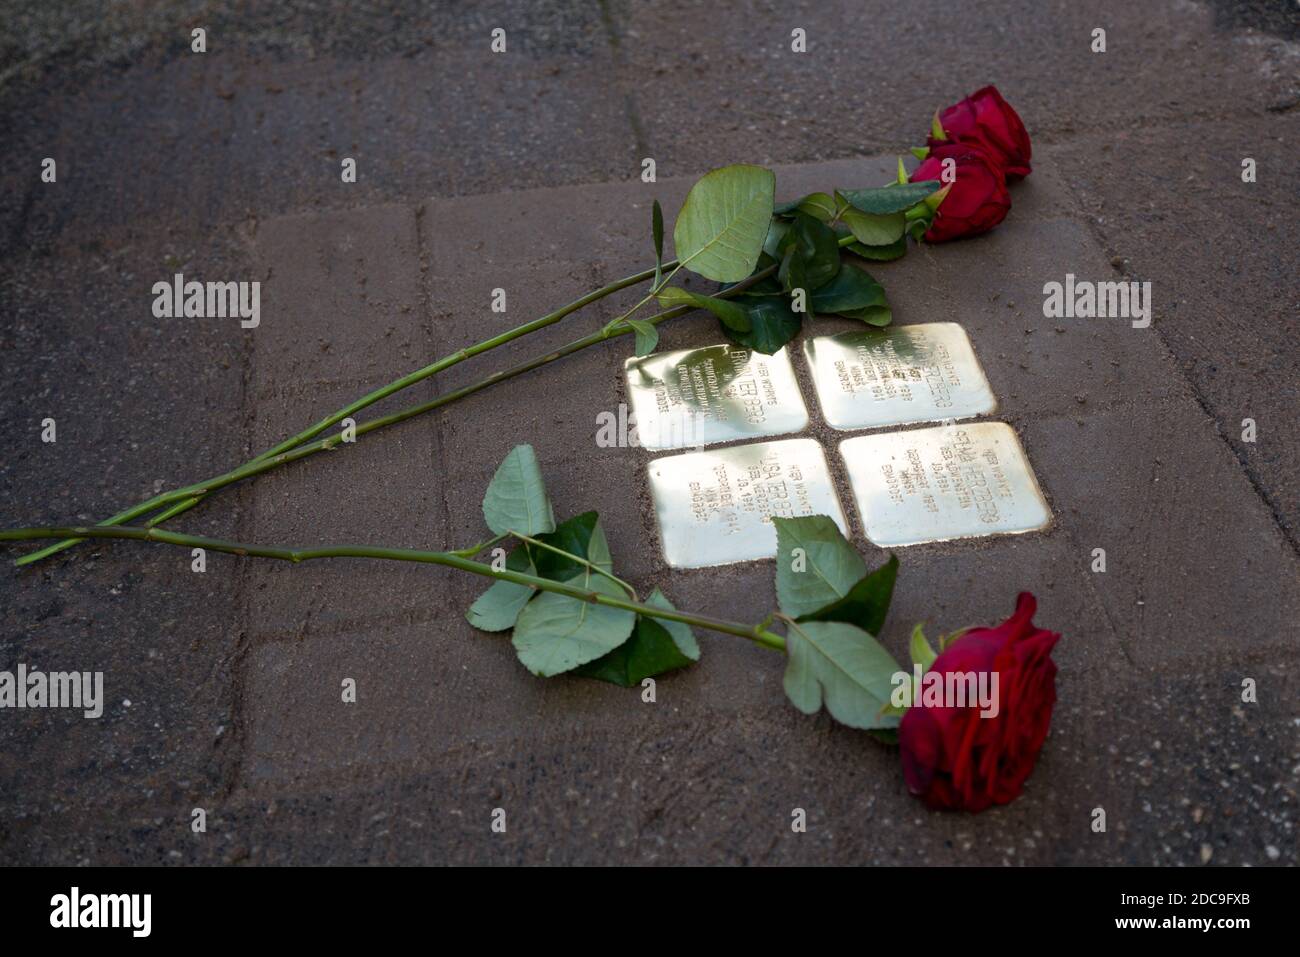 13.10.2020, Brema, Brema, Germania - nuovo blocco di inciampo per i deportati ebrei dell'era nazista. Stones inciampanti danno i nomi ai deportati al Foto Stock